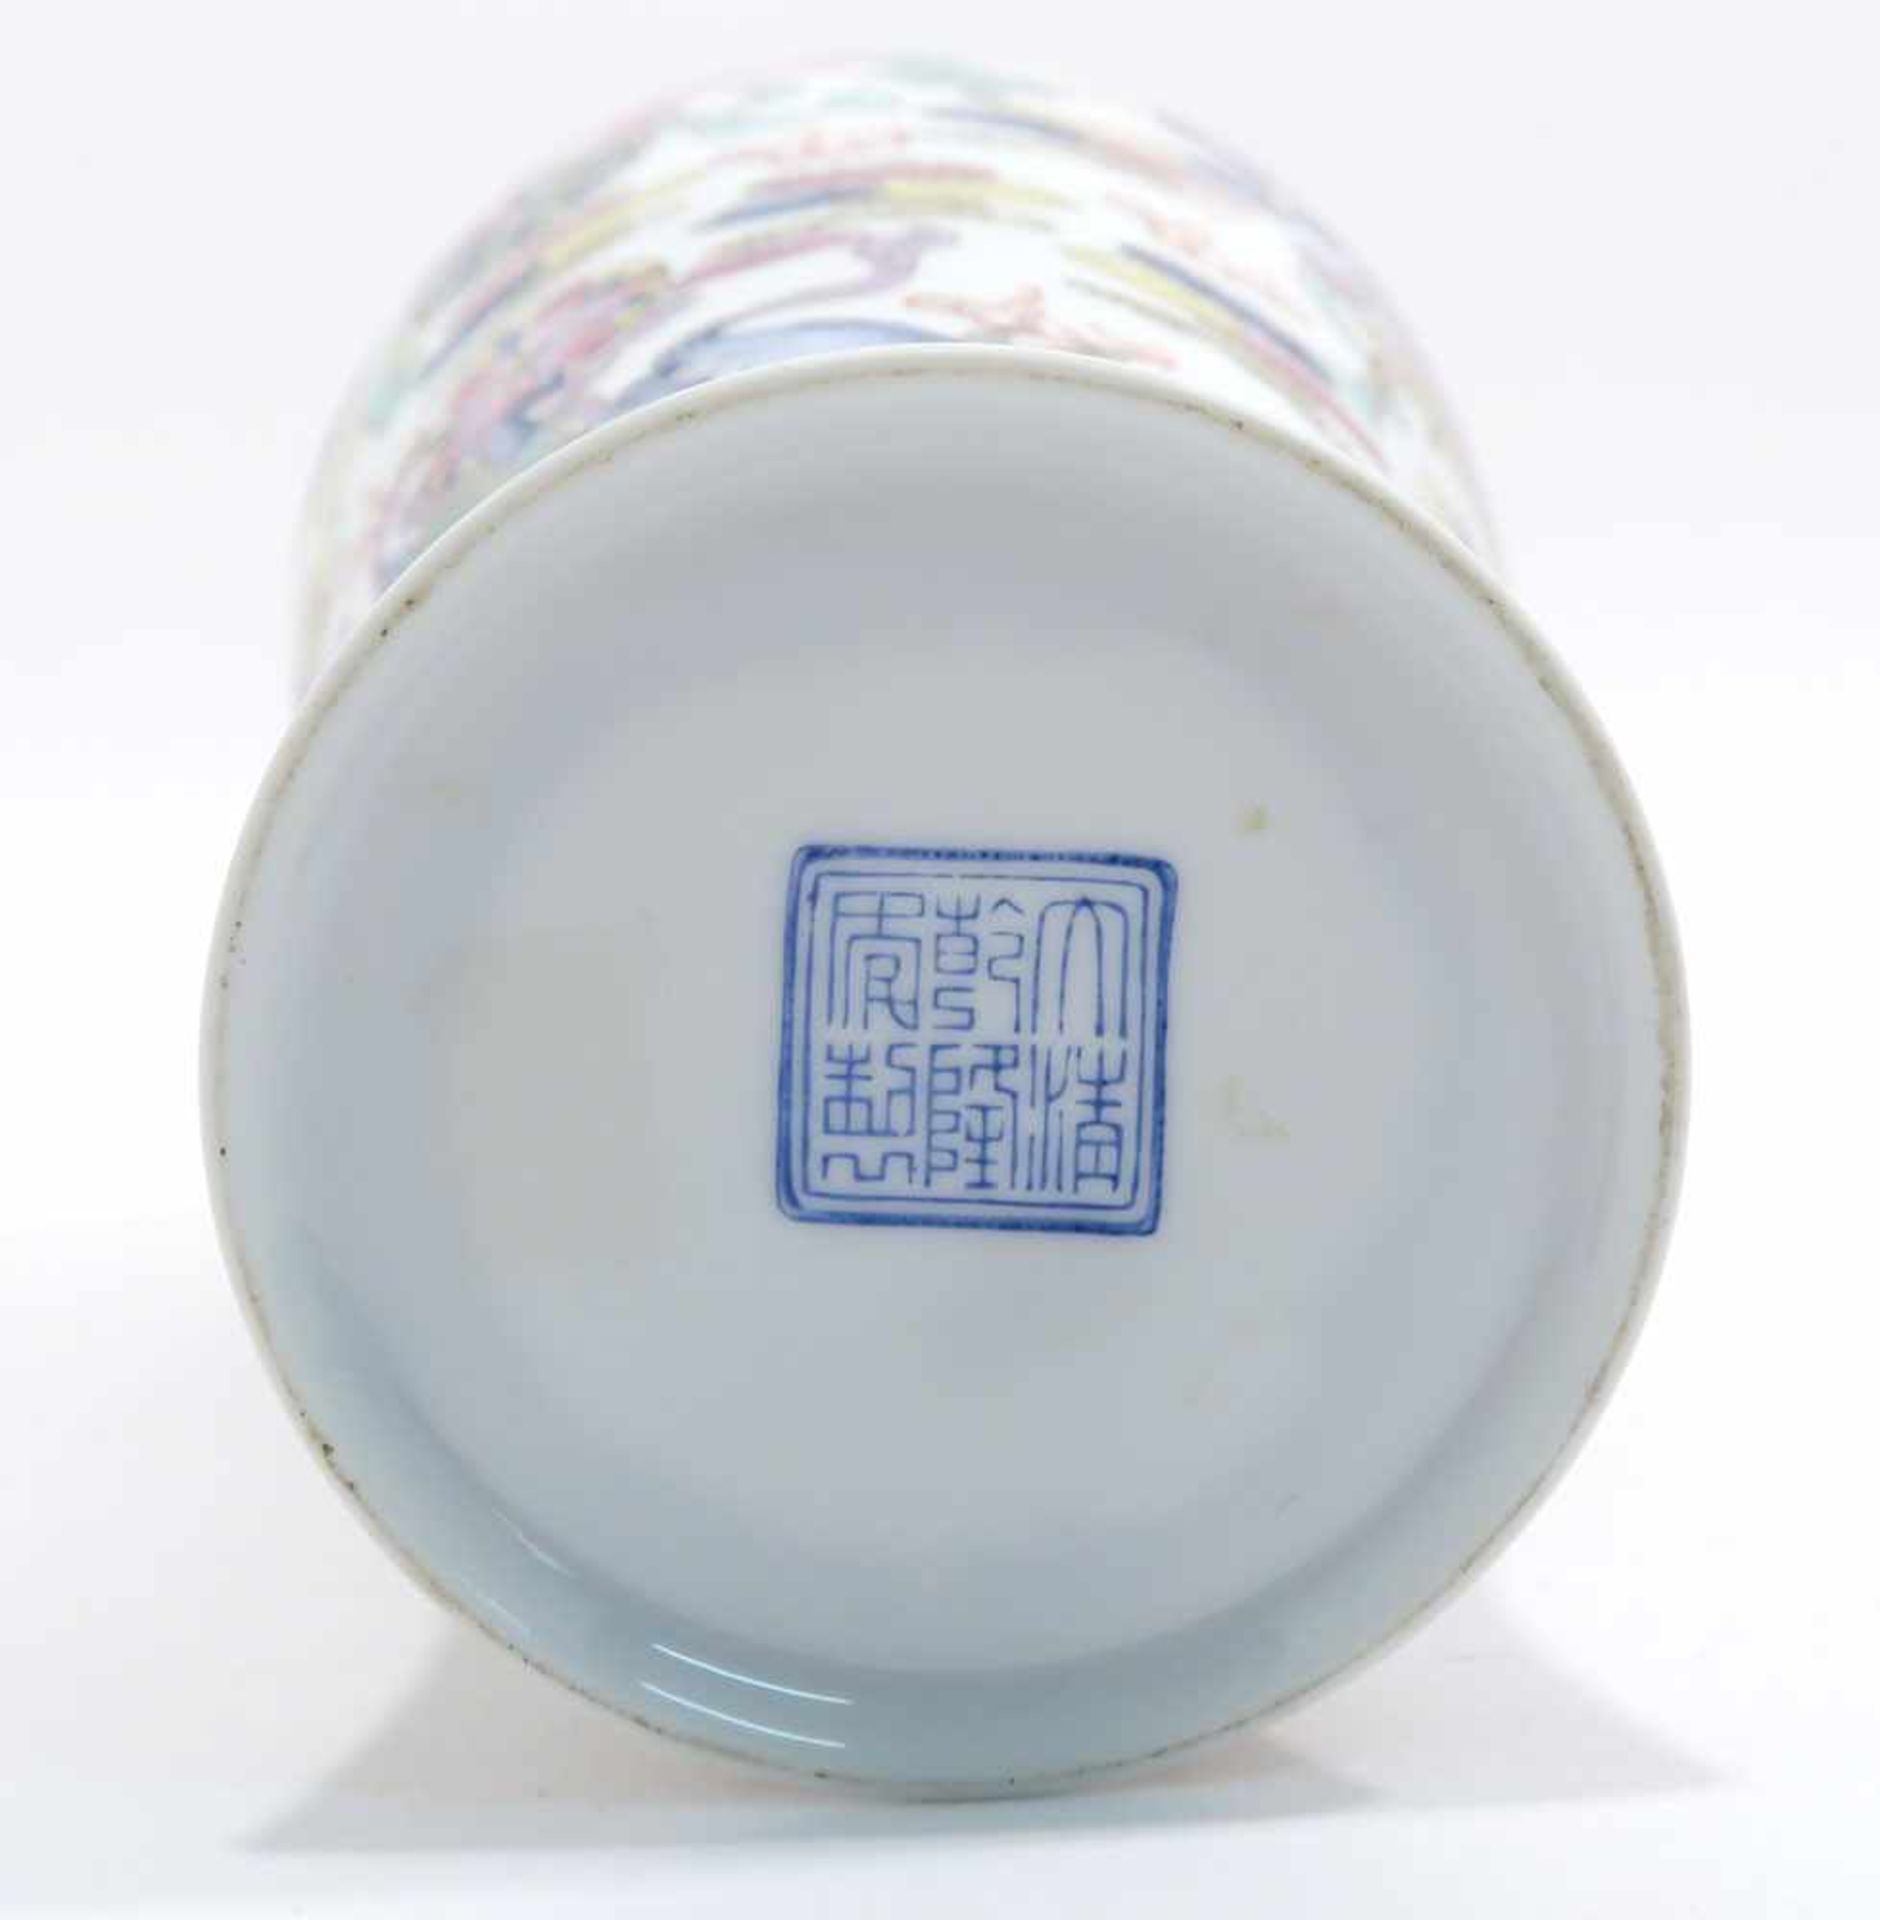 Opiumpfeife / Vase / DeckelgefäßChina. Porzellan, tlw. mit Kupfermontierung. Verschiedene bunte bzw. - Bild 20 aus 21